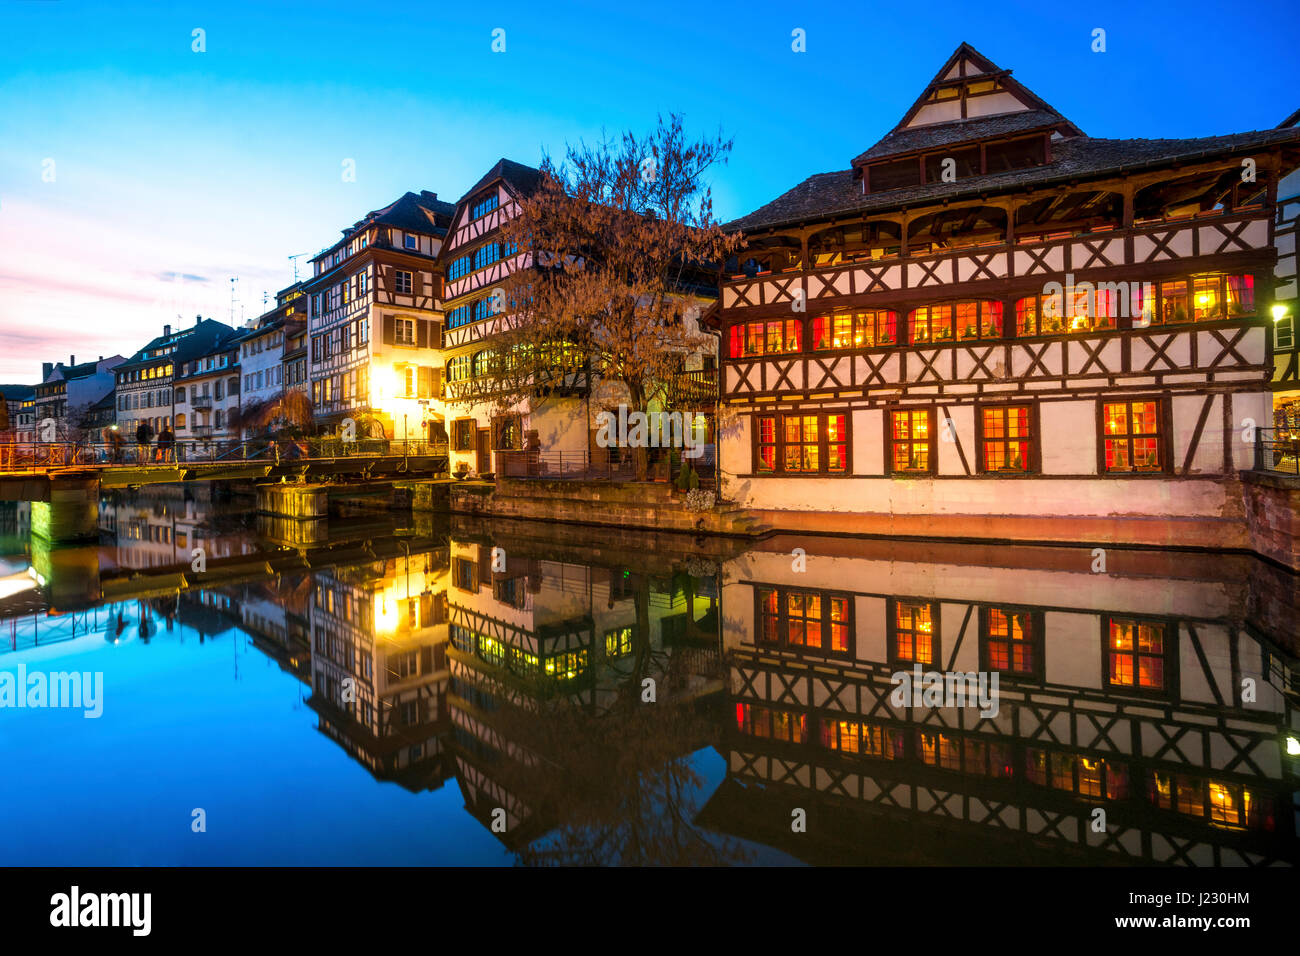 France, Strasbourg, La Petite France, de maisons à colombages et de l'Ill river au premier plan à l'heure bleue Banque D'Images